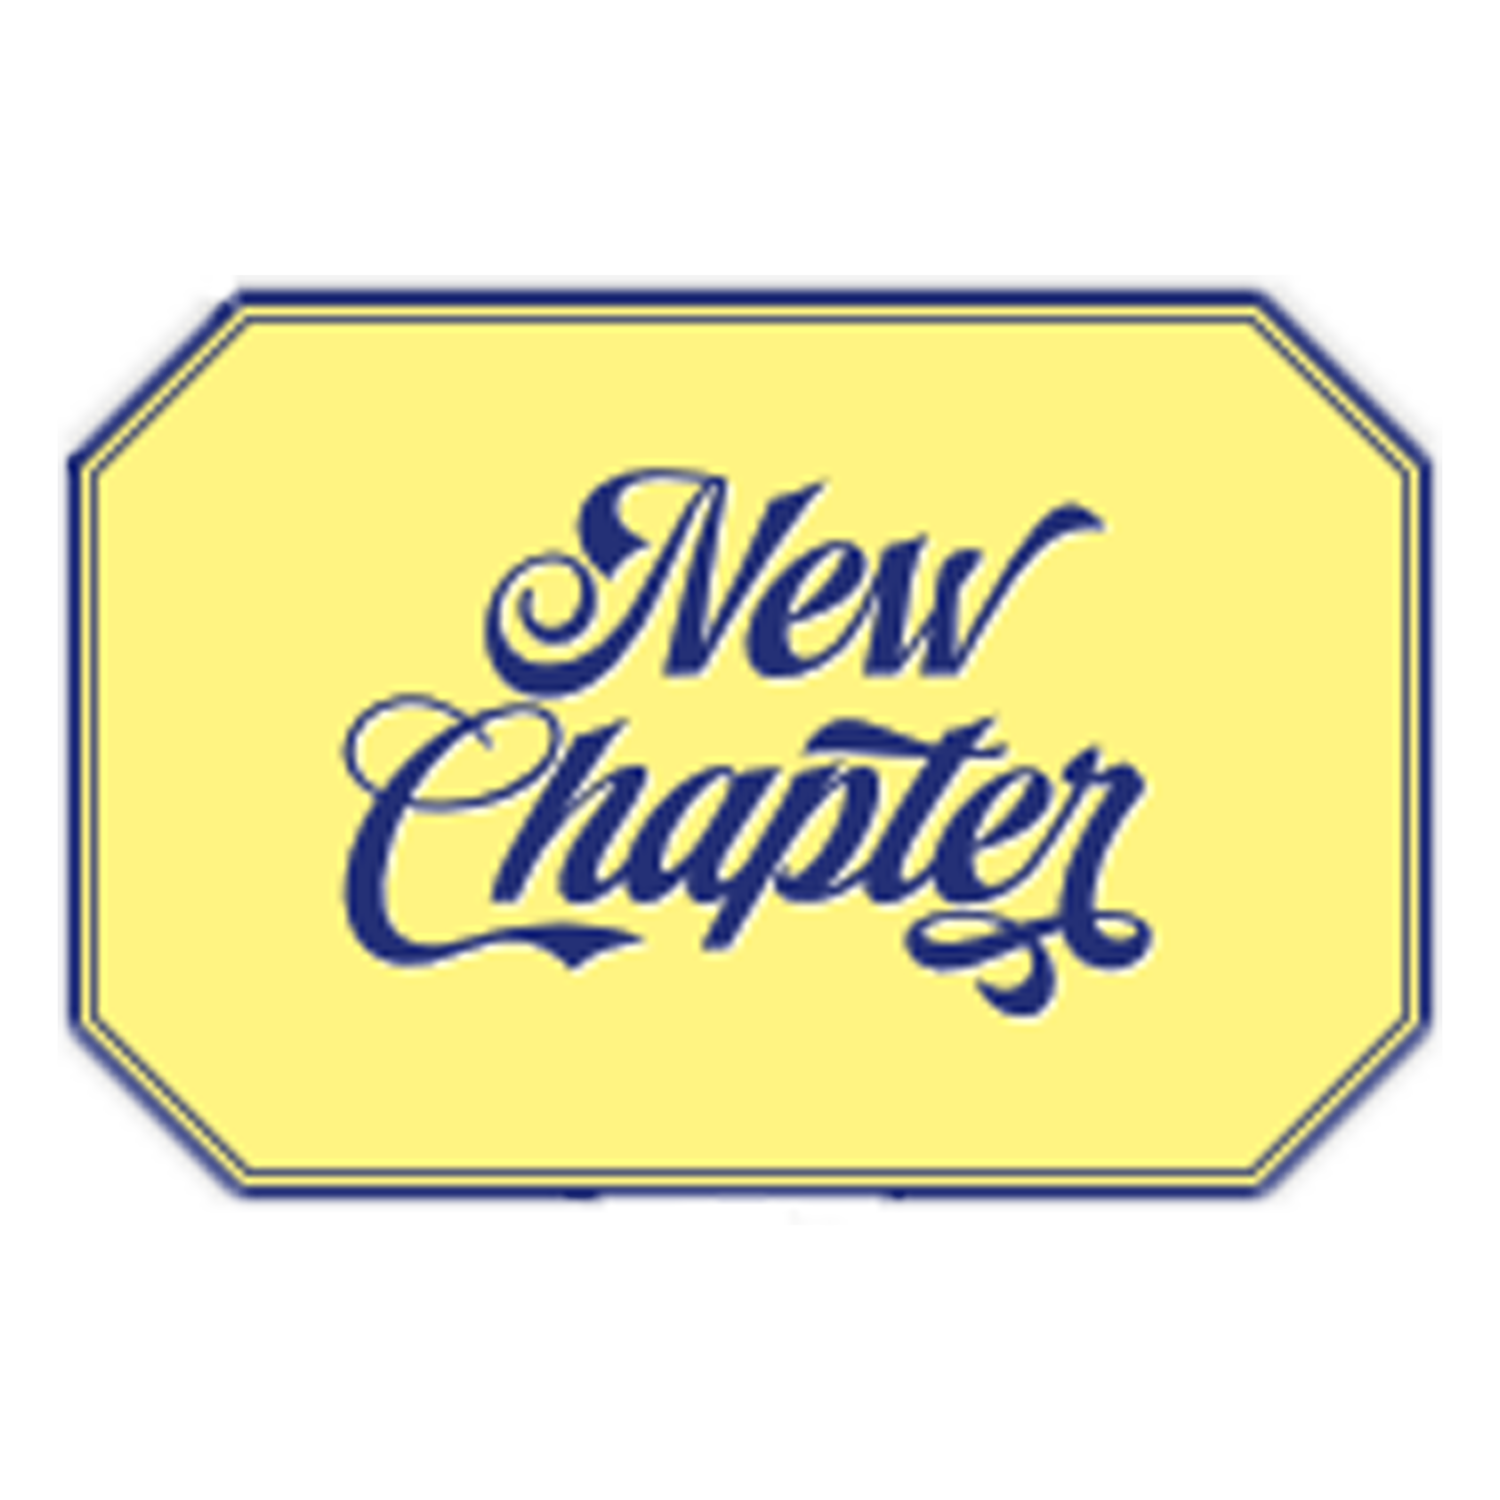 New Chapter Gruener